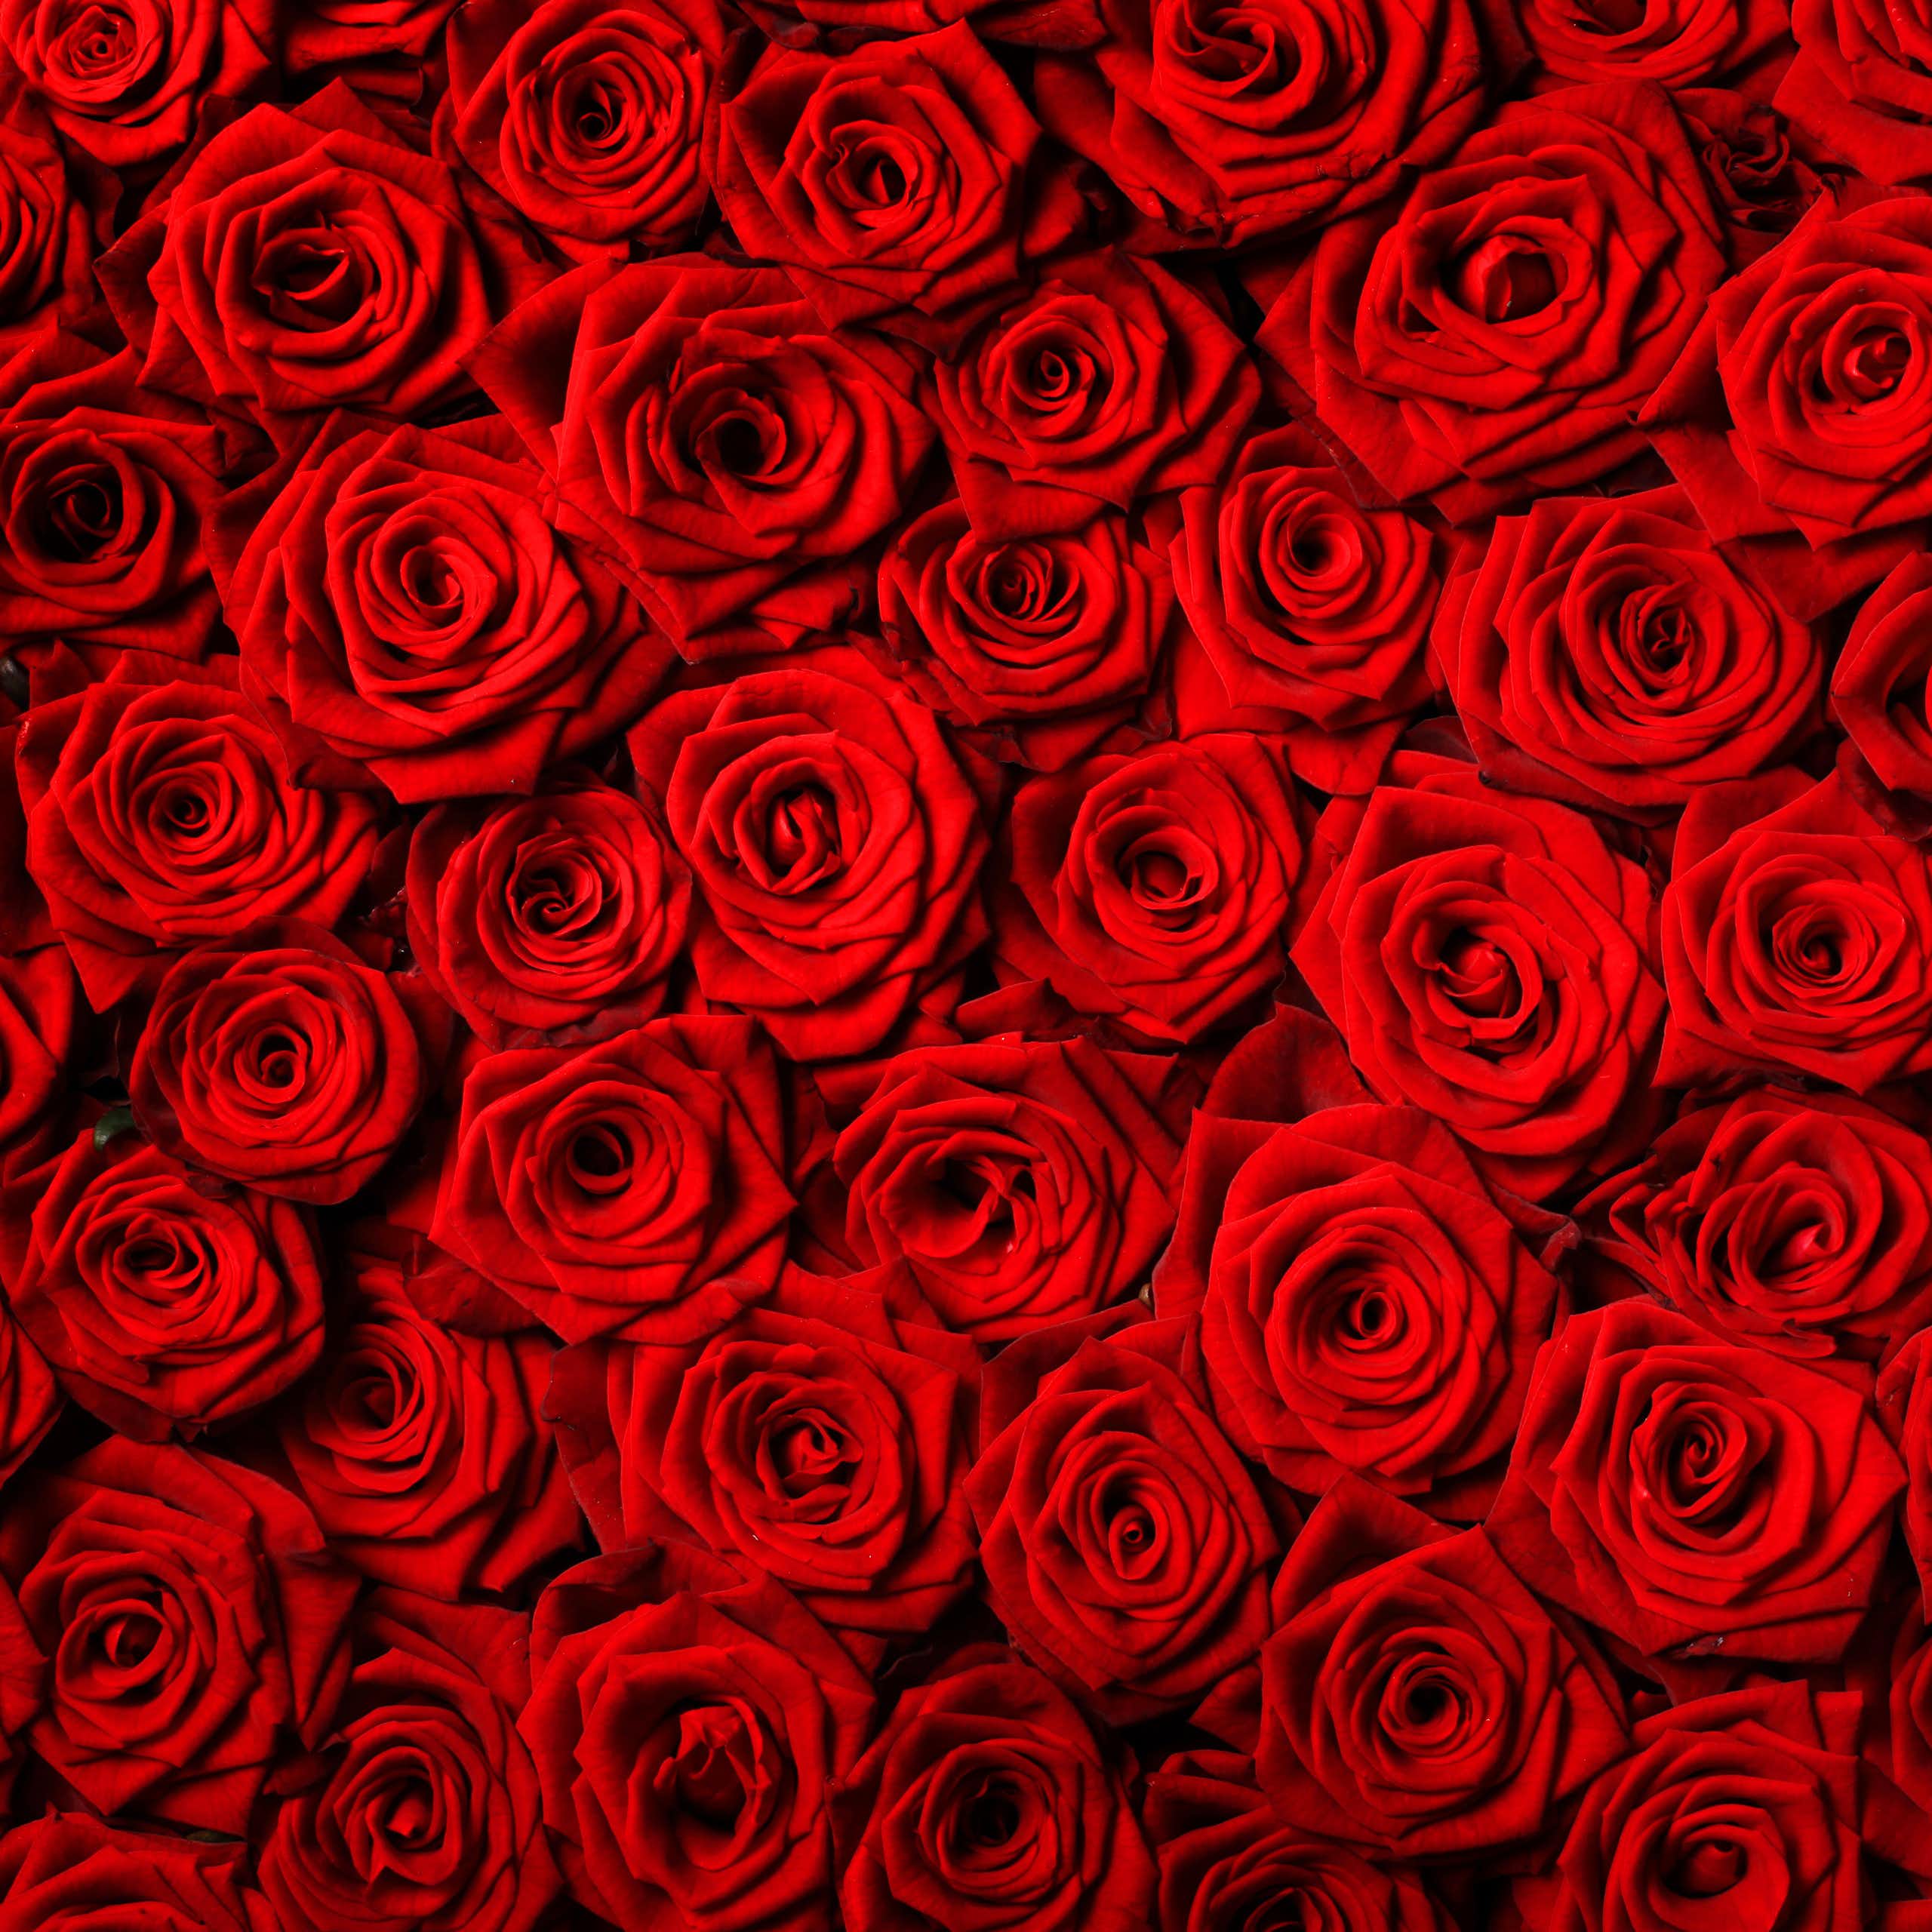 La rosa roja, objeto de la globalización